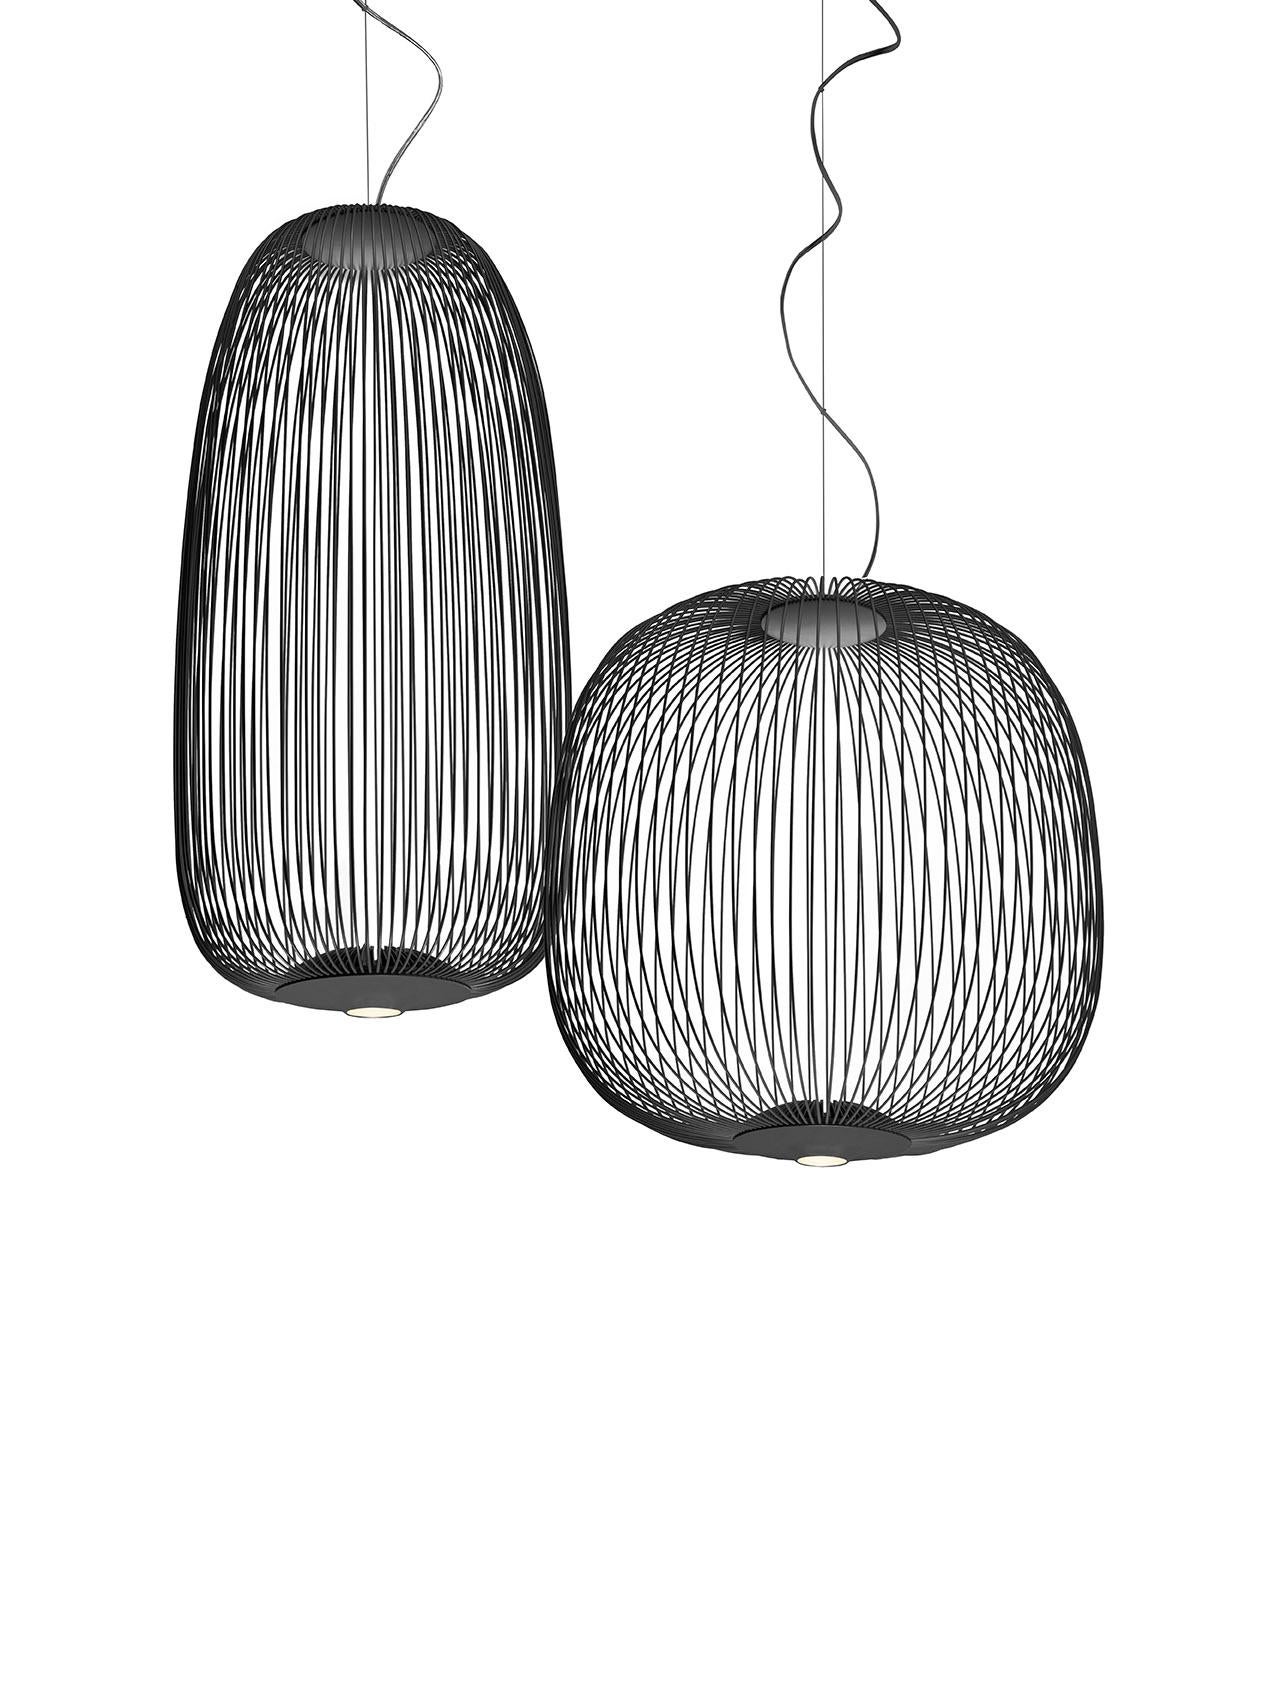 Foscarini Spokes 2 Suspension Lamp in Graphite by Garcia and Cumini For Sale 2